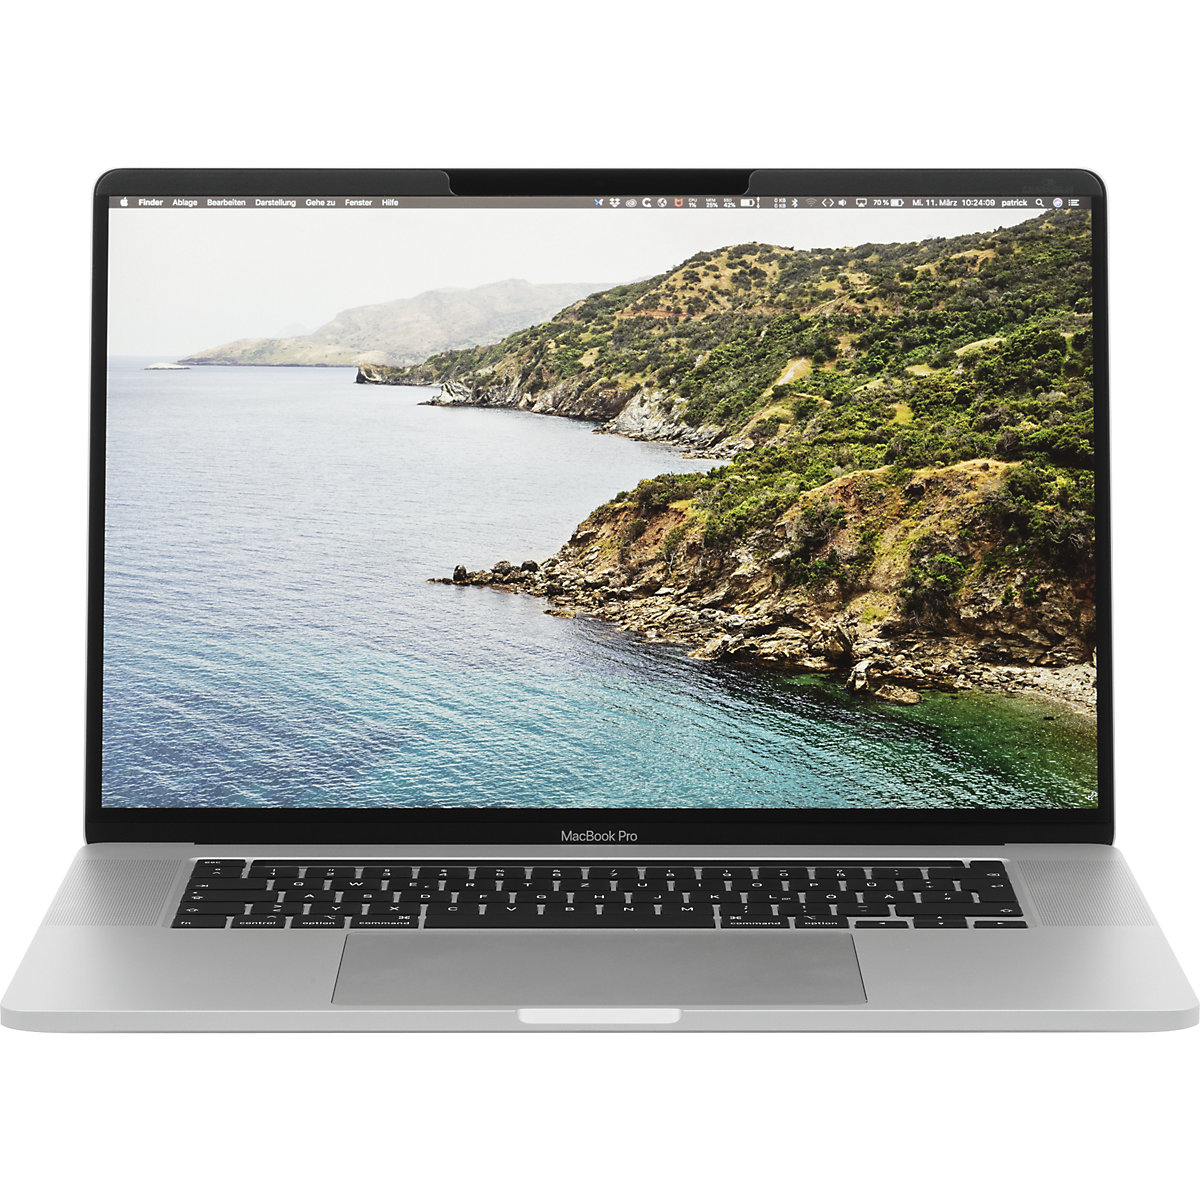 Filter za zaščito pred neželenimi pogledi MAGNETIC MacBook Pro® – DURABLE (Slika izdelka 8)-7